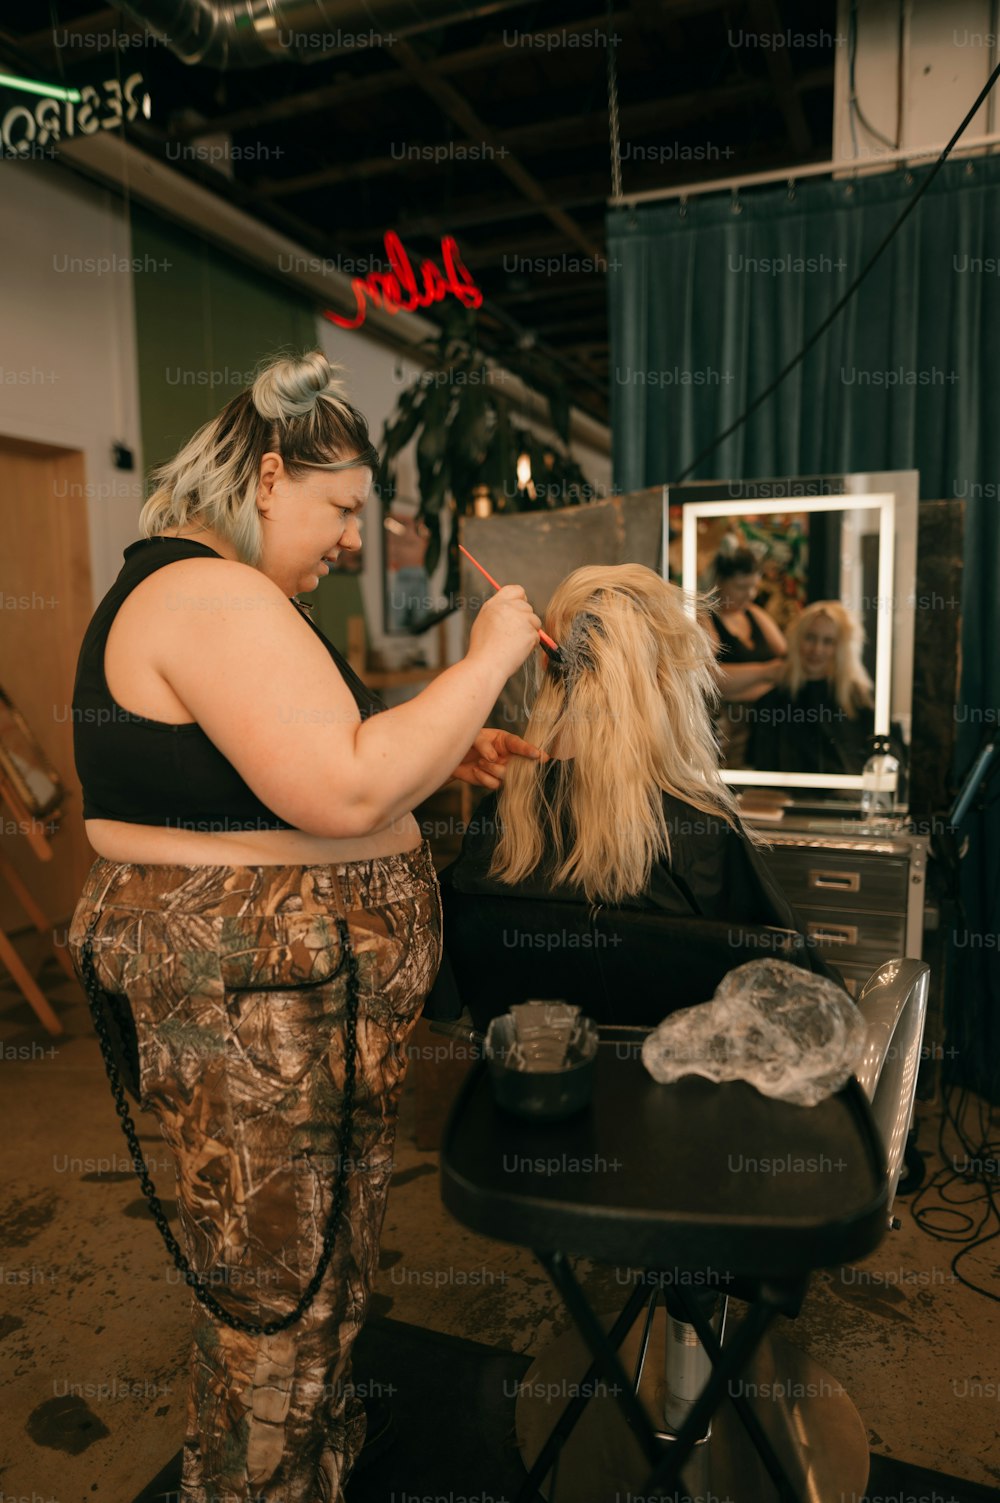 a woman getting her hair cut at a salon